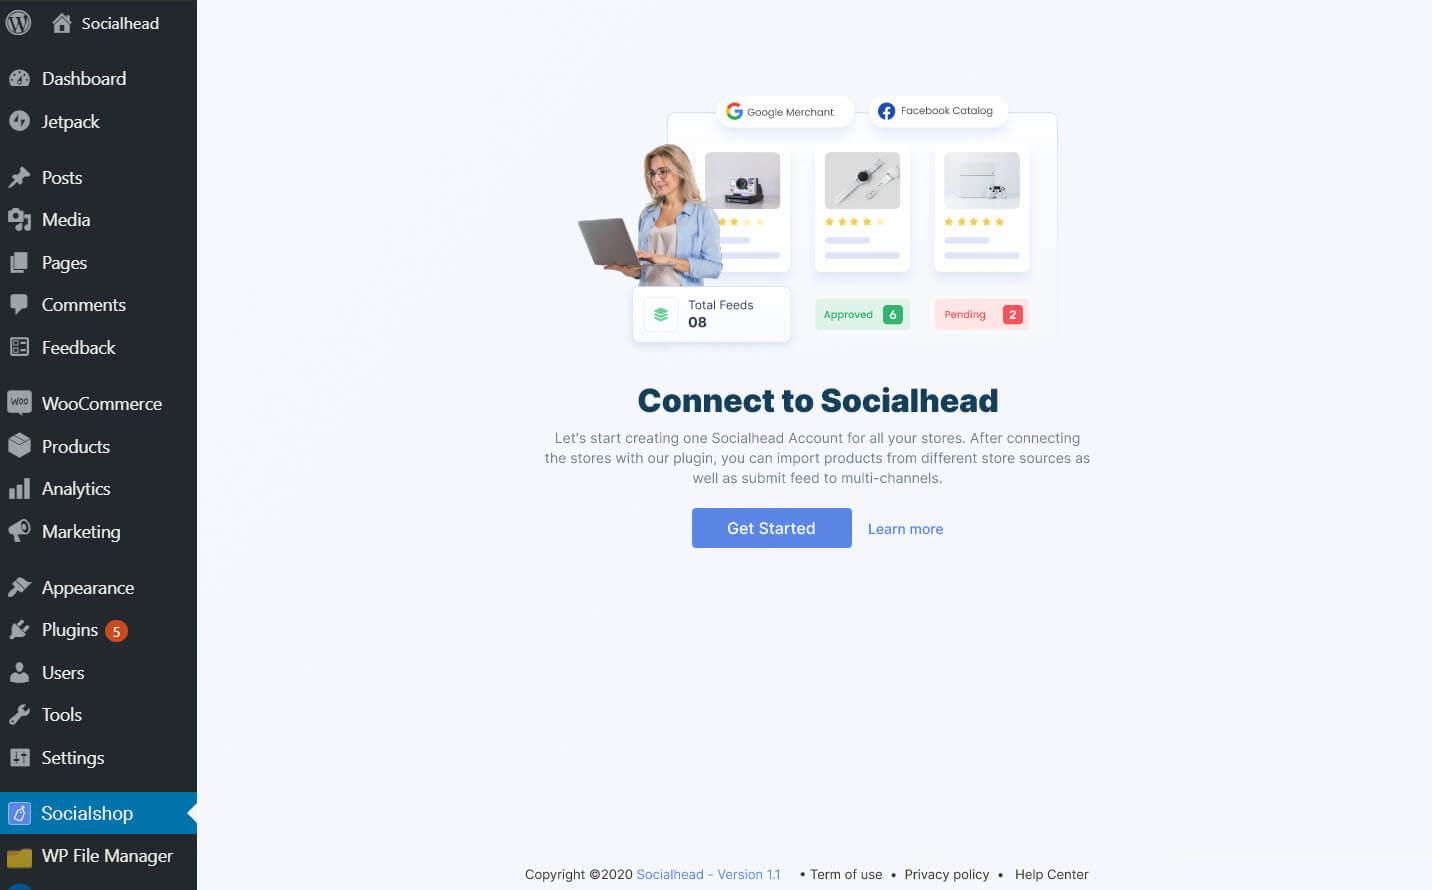 Get Started with Socialshop Plugin